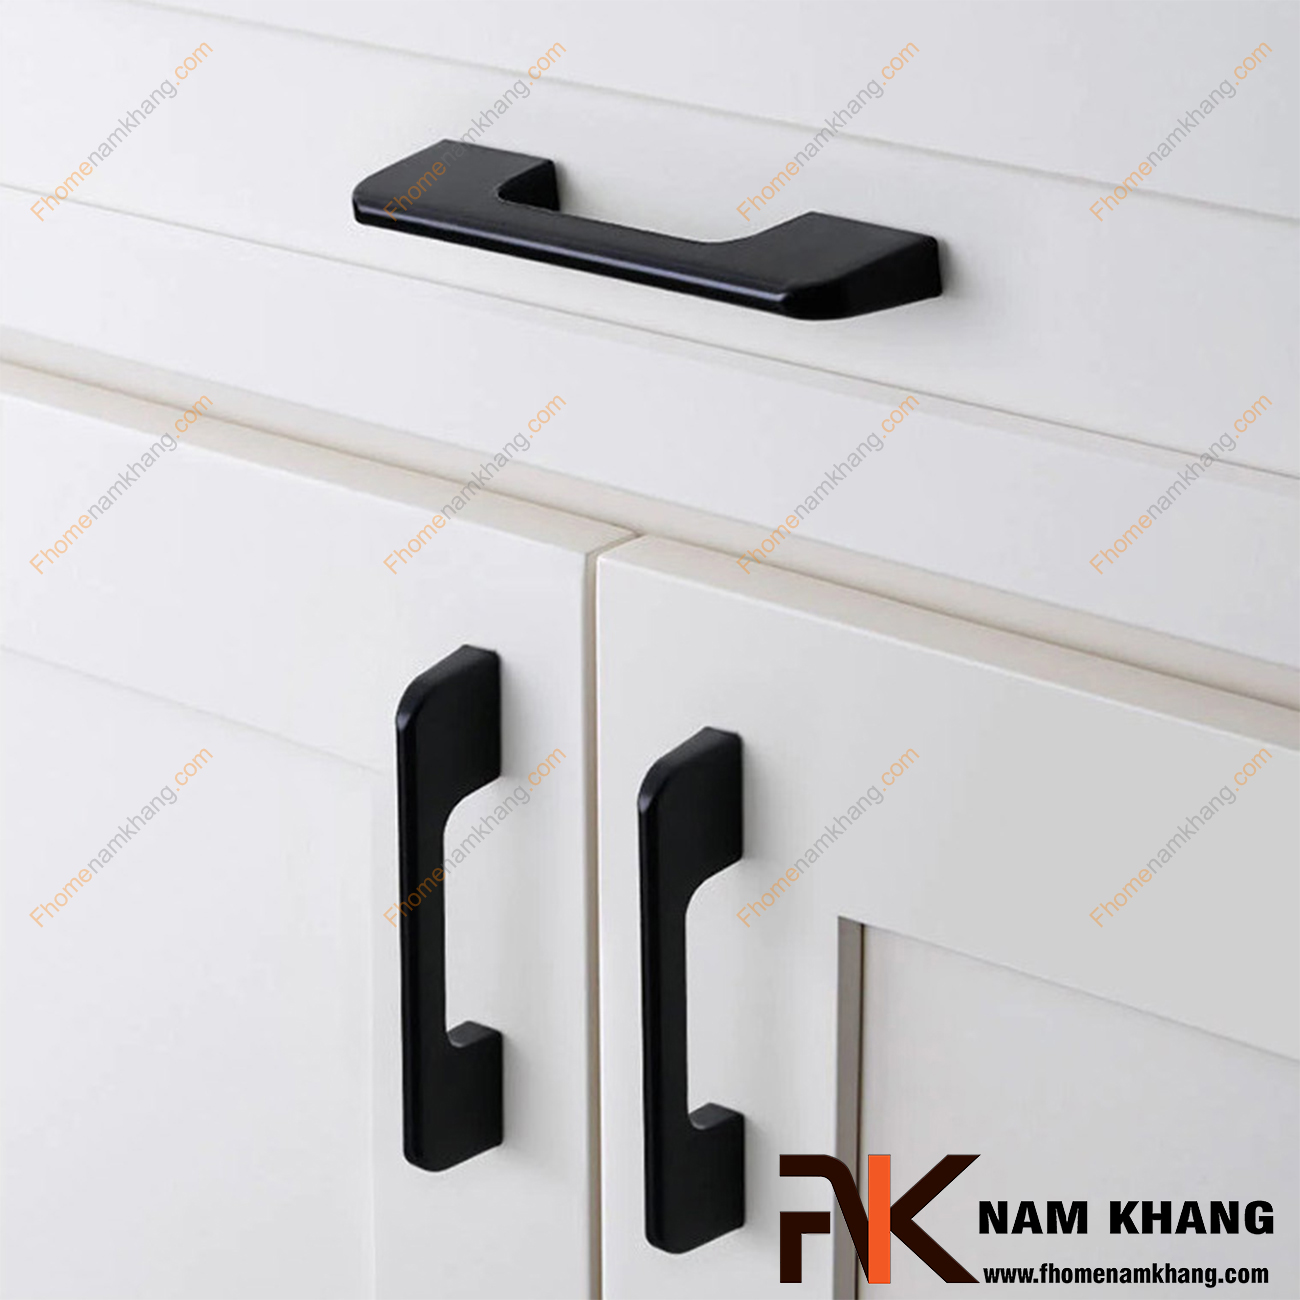 Tay nắm cửa tủ quần áo màu đen mờ NK260-D là một dòng tay nắm tủ theo bộ với nhiều kích thước được sử dụng trên một hoặc nhiều loại phong cách tủ khác nhau tùy nhu cầu thiết kế